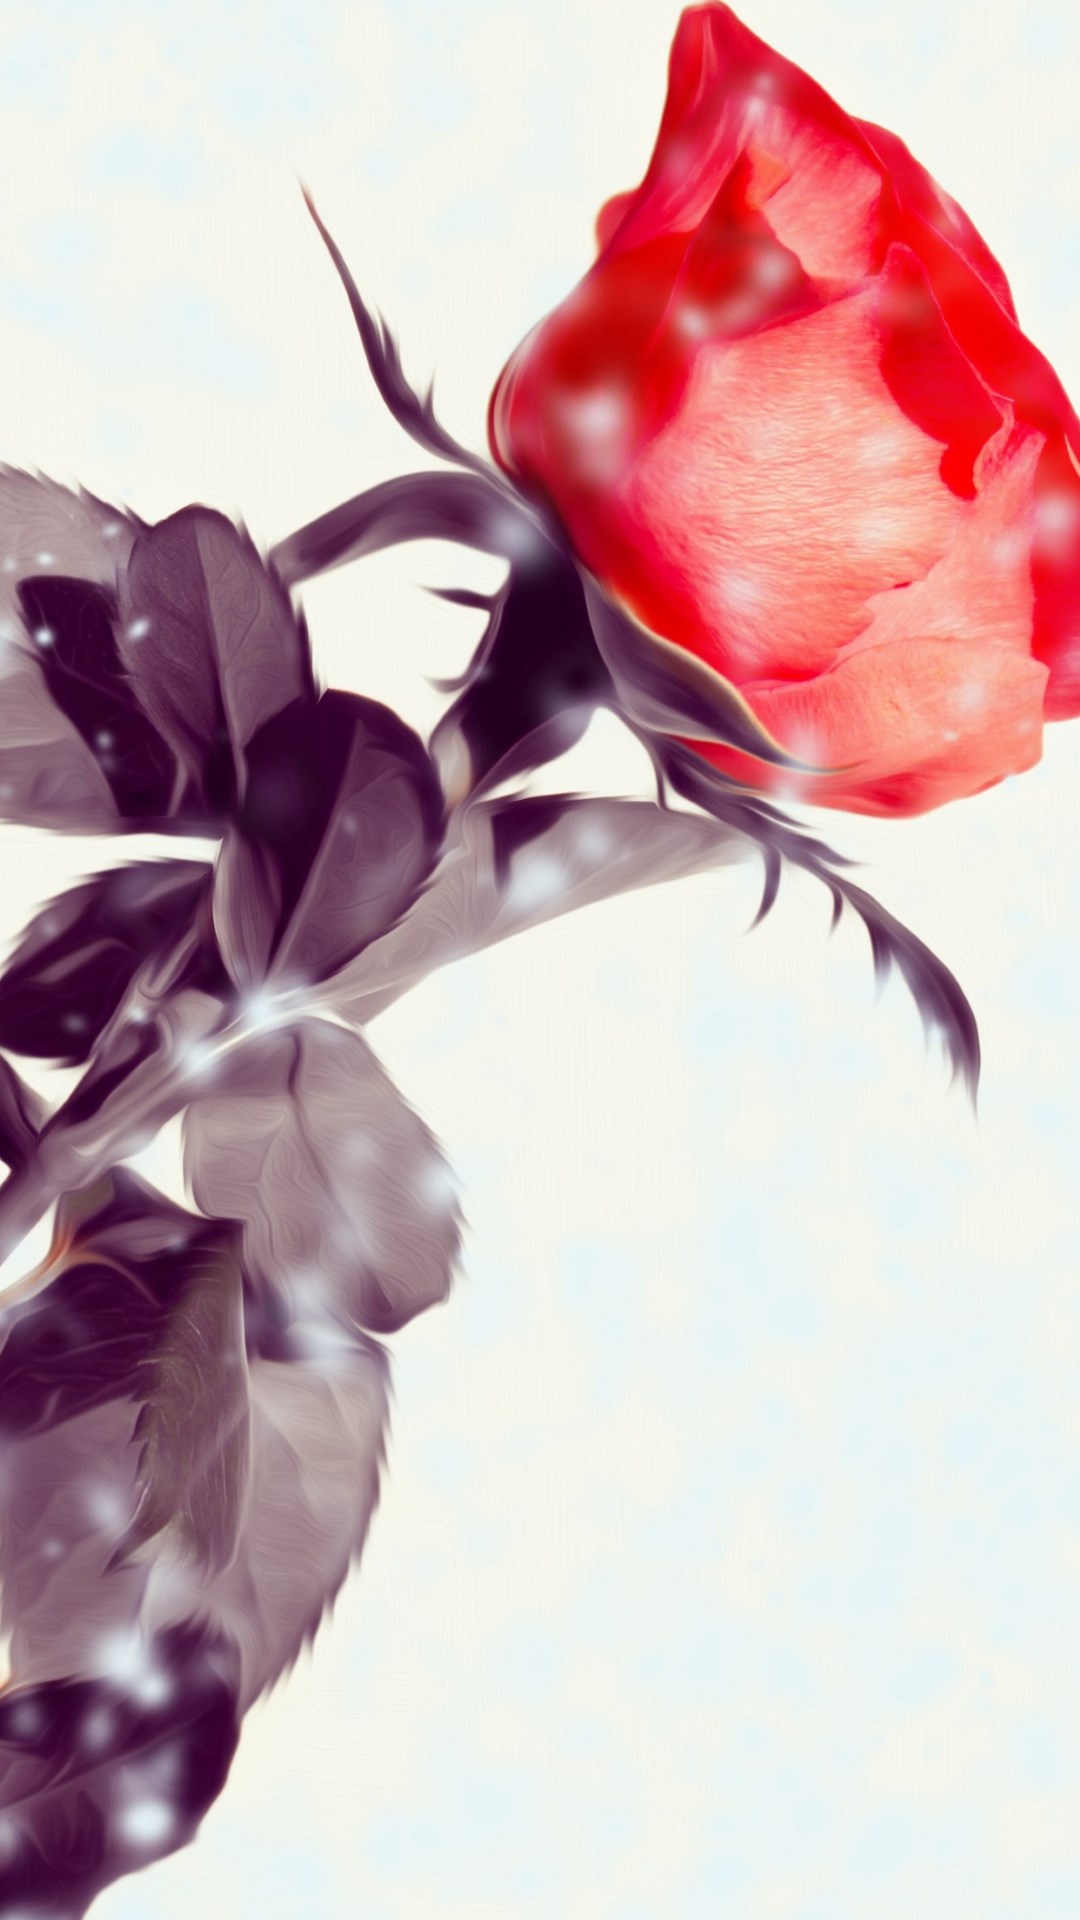 Rose flower wallpaper 1080x1920